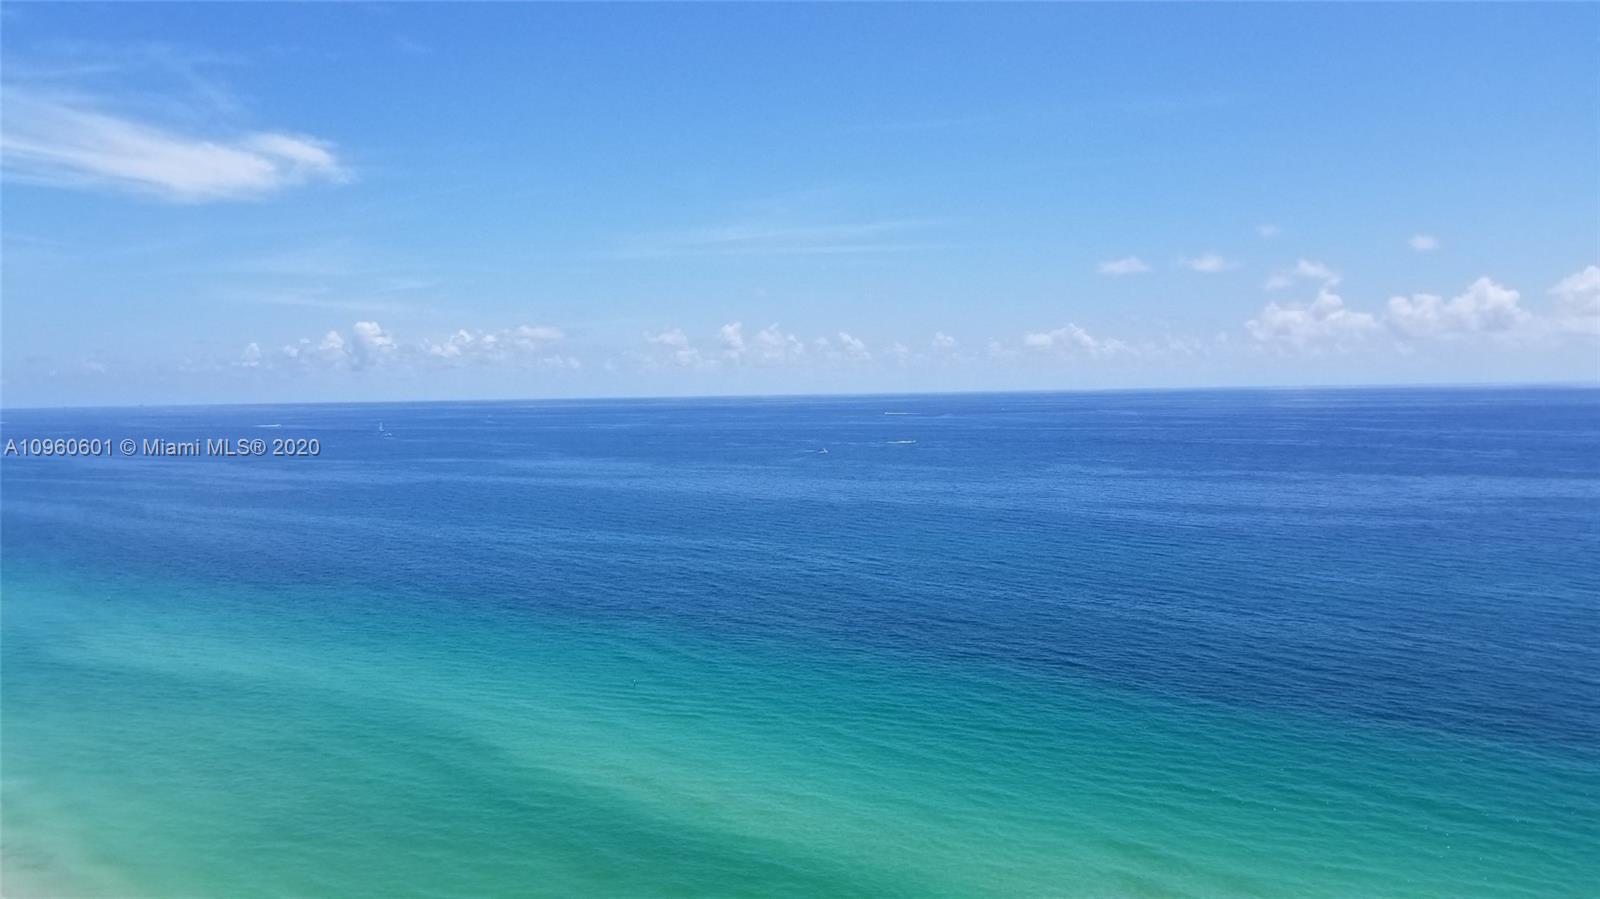 a view of an ocean